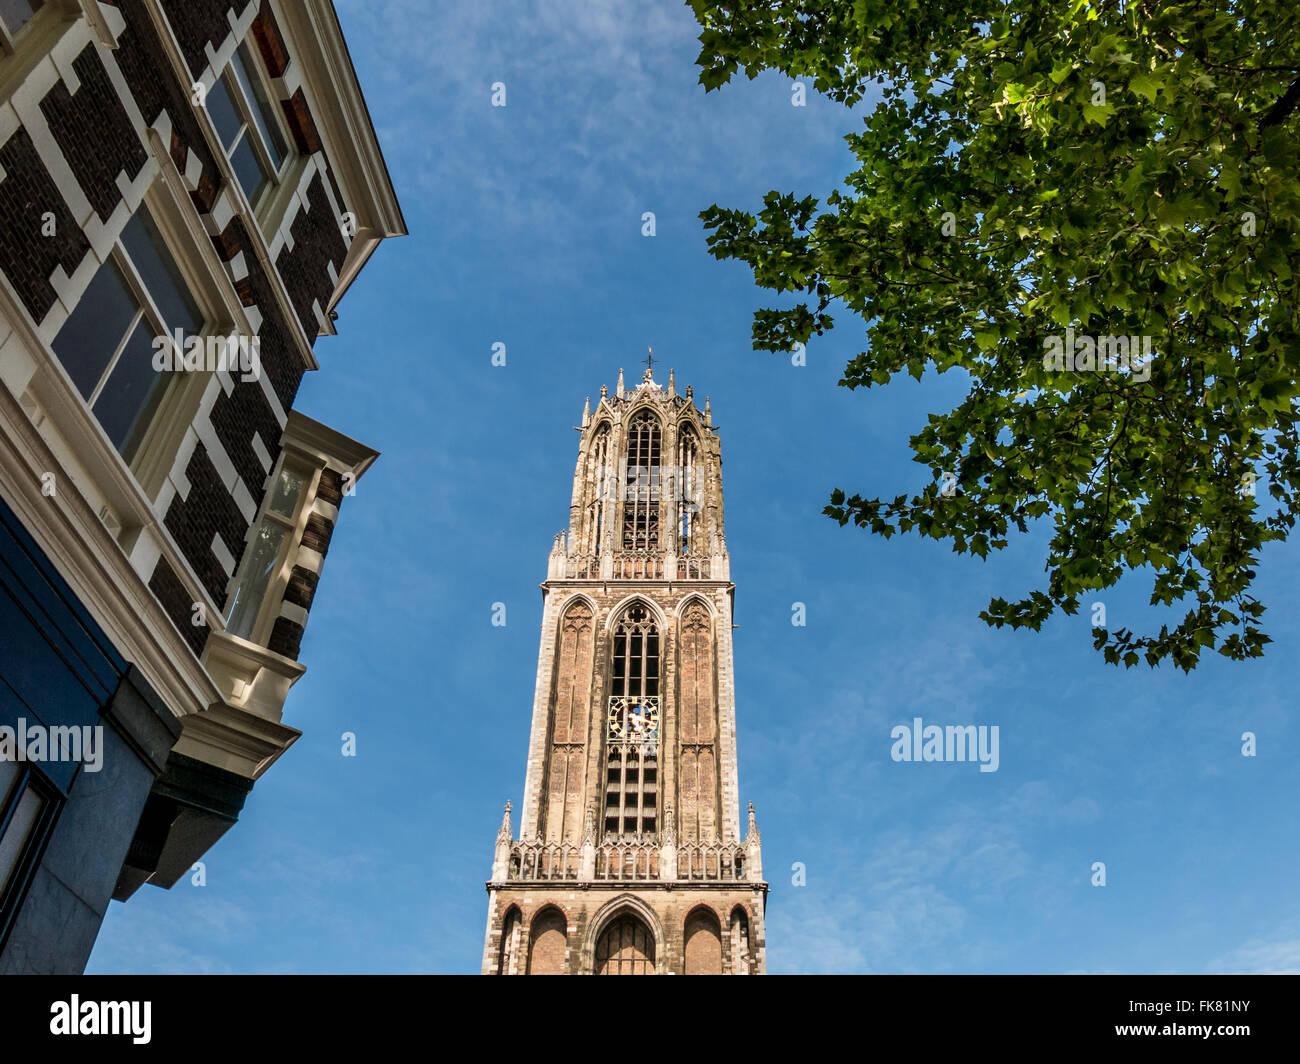 Top cattolica di San Martino la cattedrale di torre di Dom nella città di Utrecht, la torre campanaria più alta nei Paesi Bassi Foto Stock